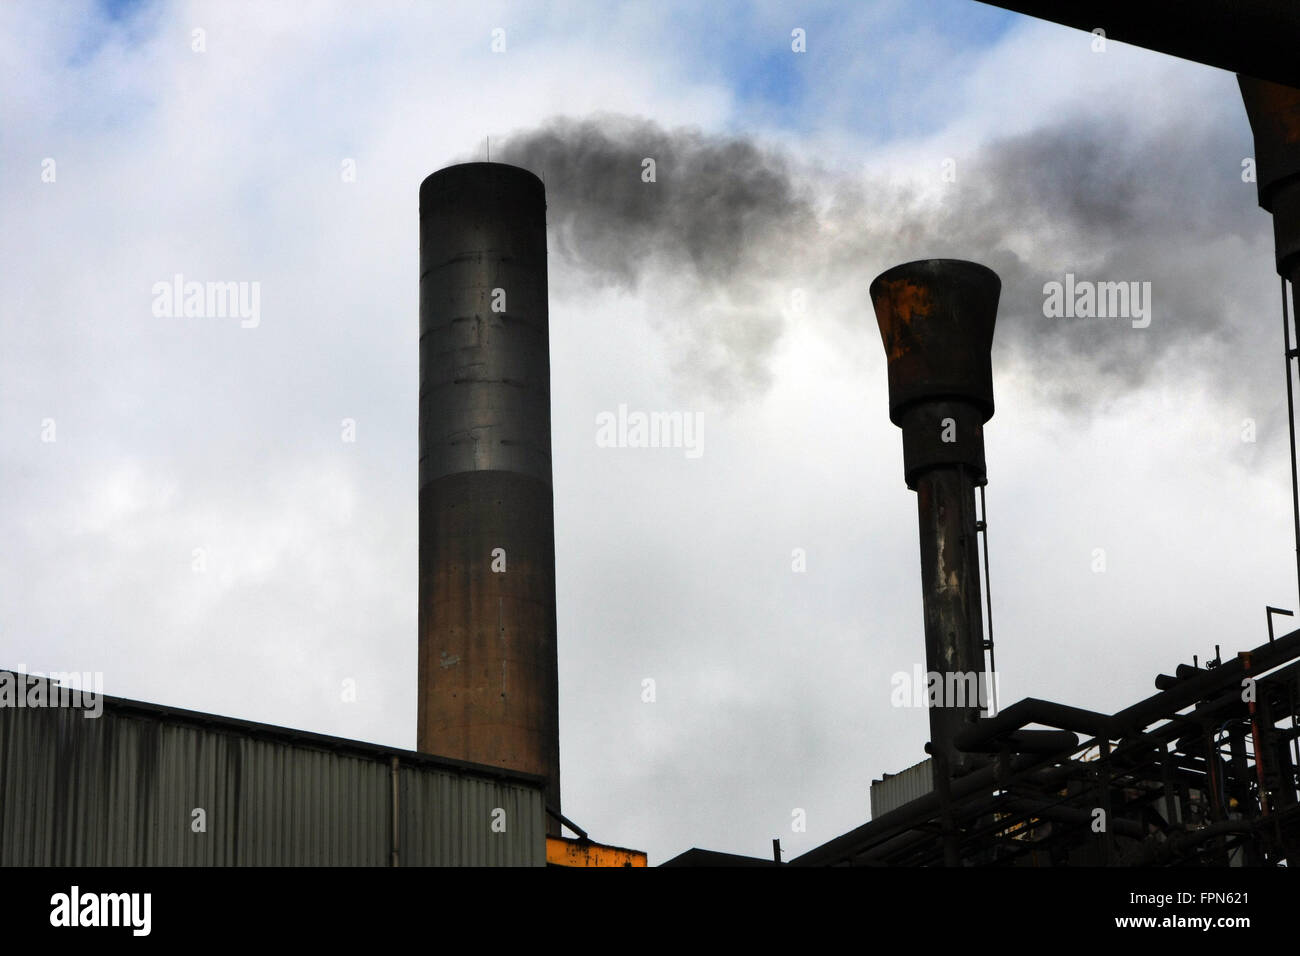 Humo y emisiones de Chimeneas de fábrica. Foto de stock